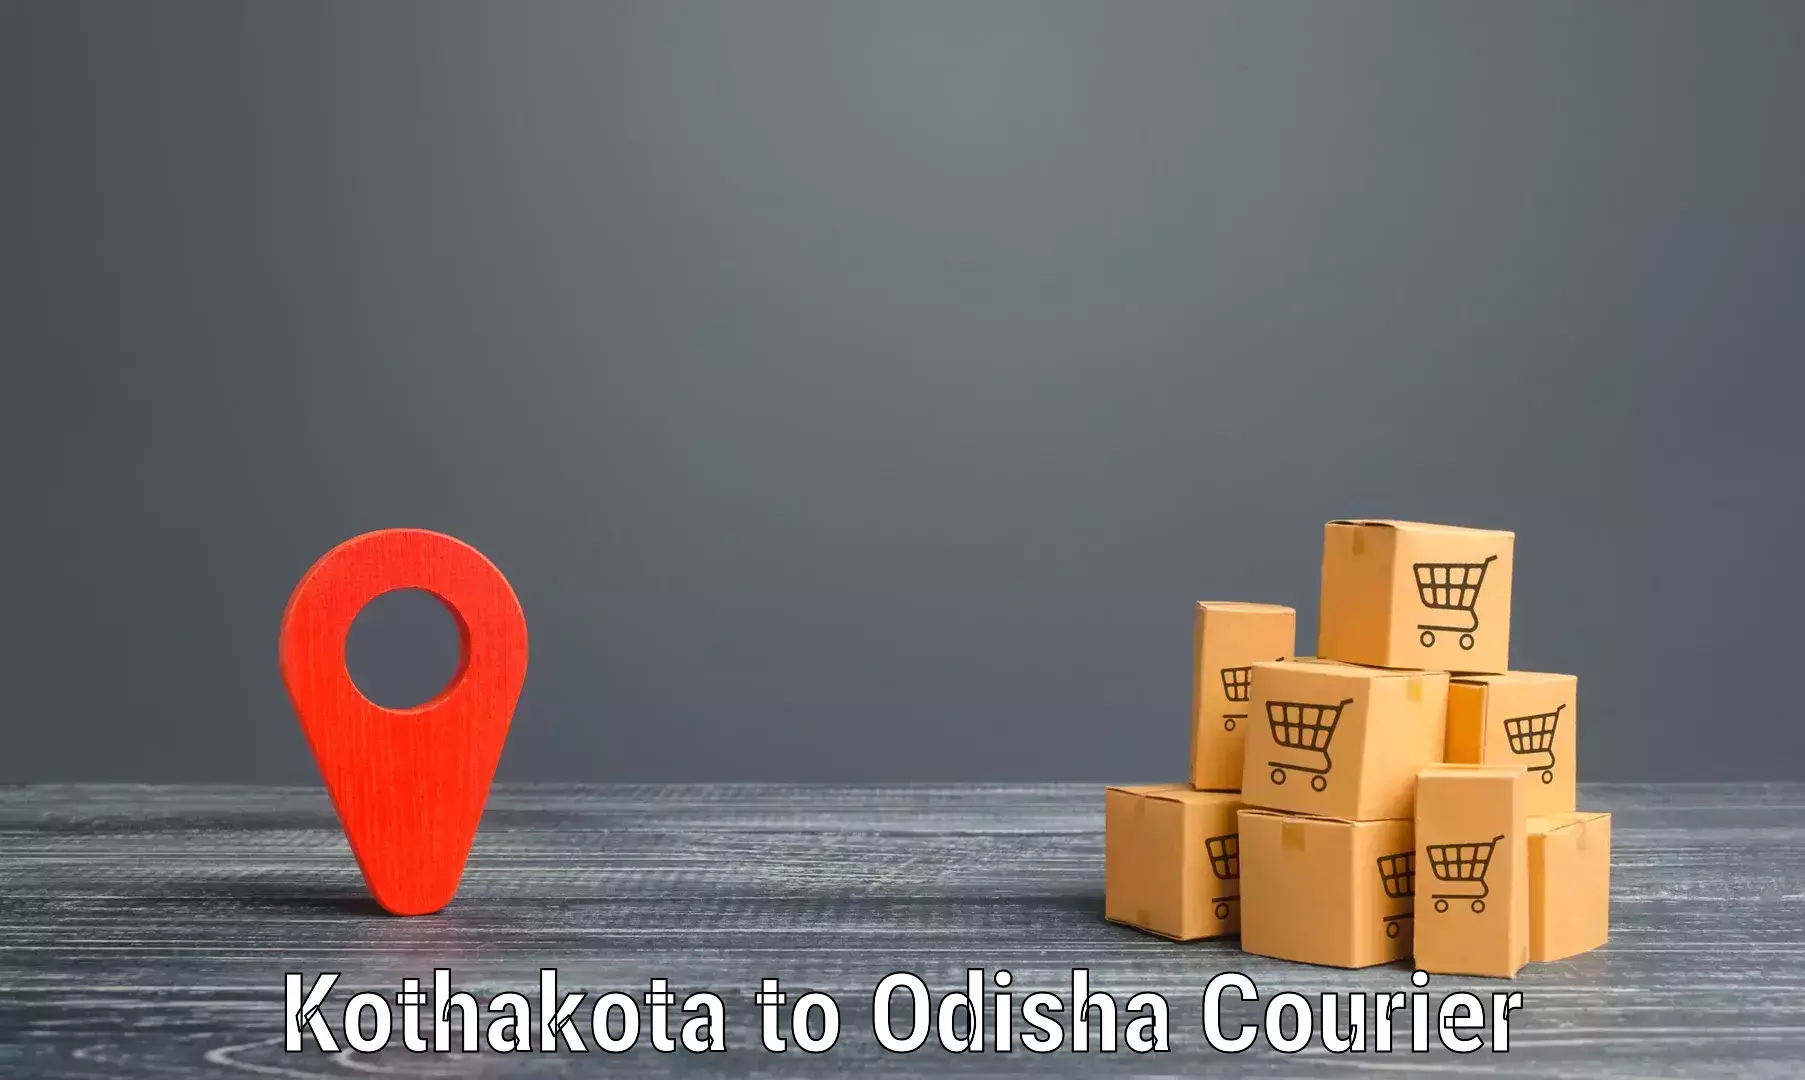 High-priority parcel service Kothakota to Jharsuguda